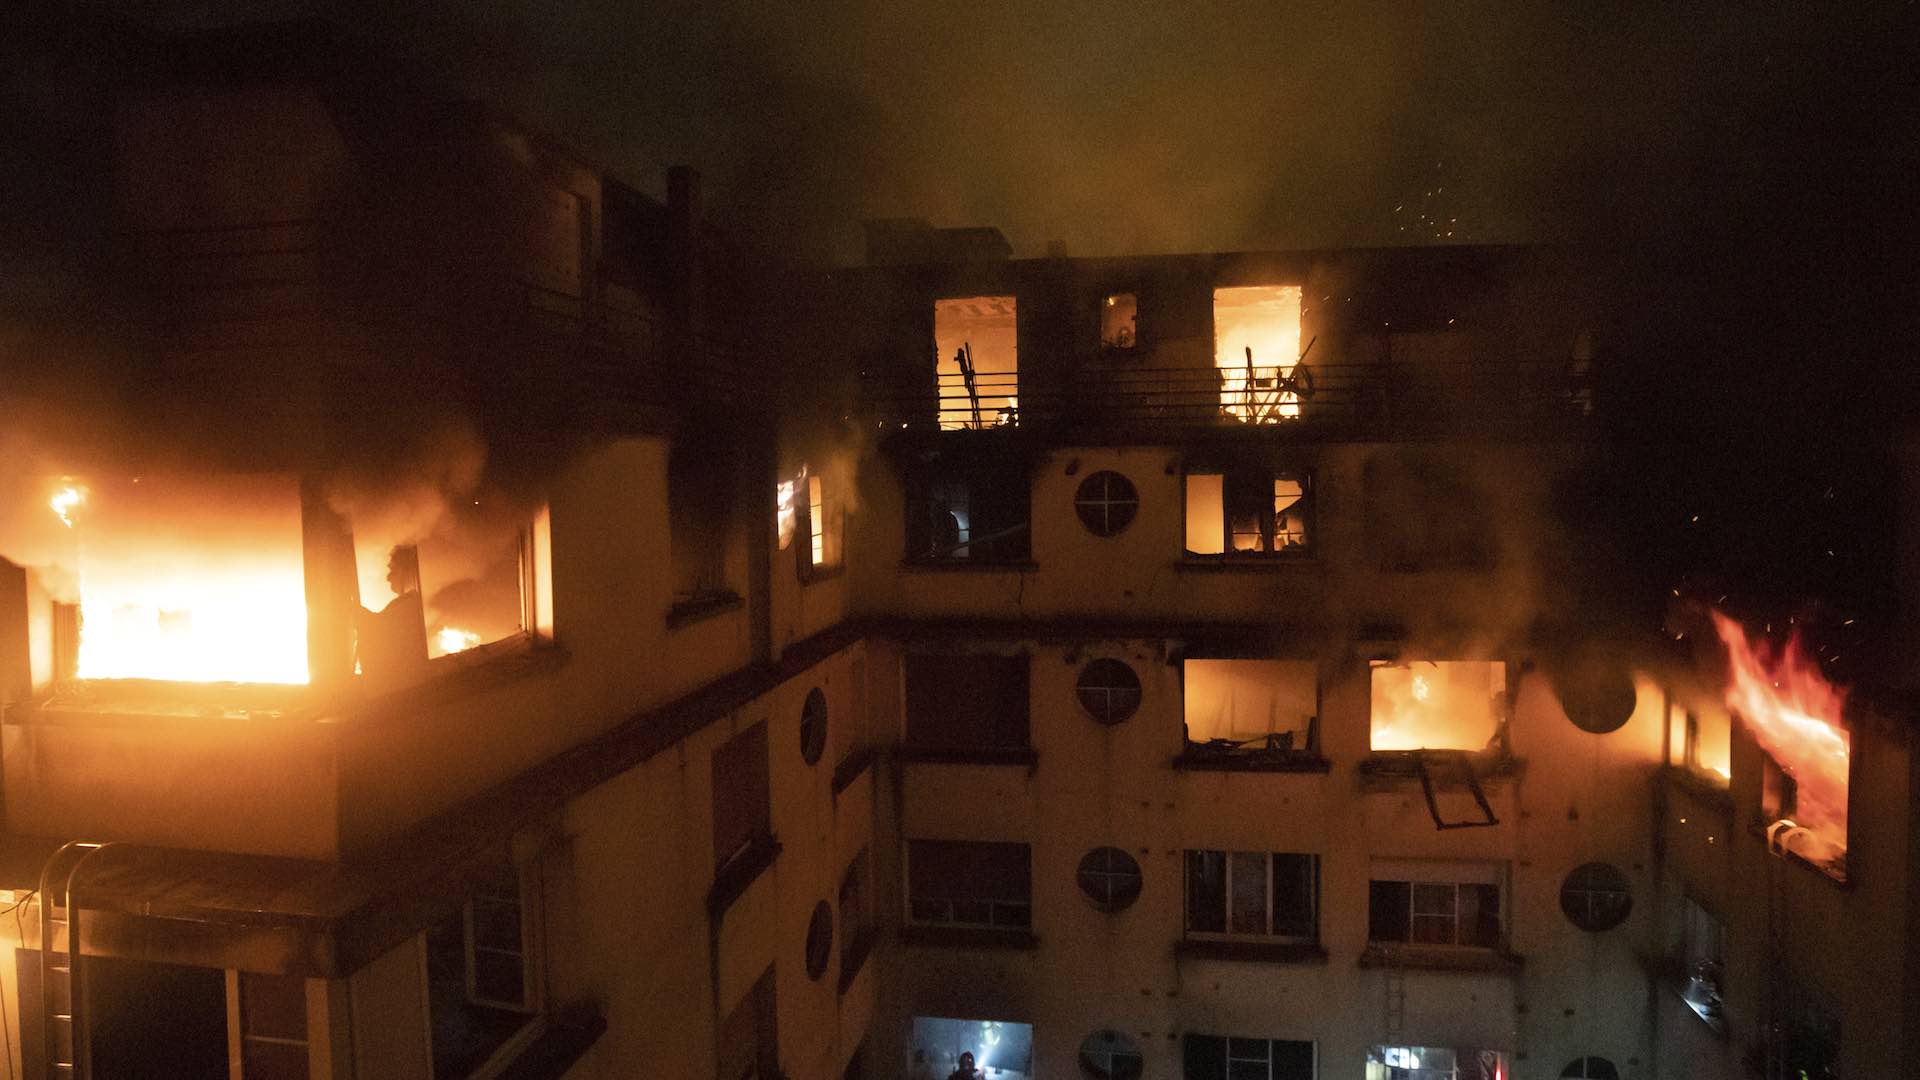 Imputada la mujer con problemas psicológicos sospechosa de haber incendiado un edificio en París